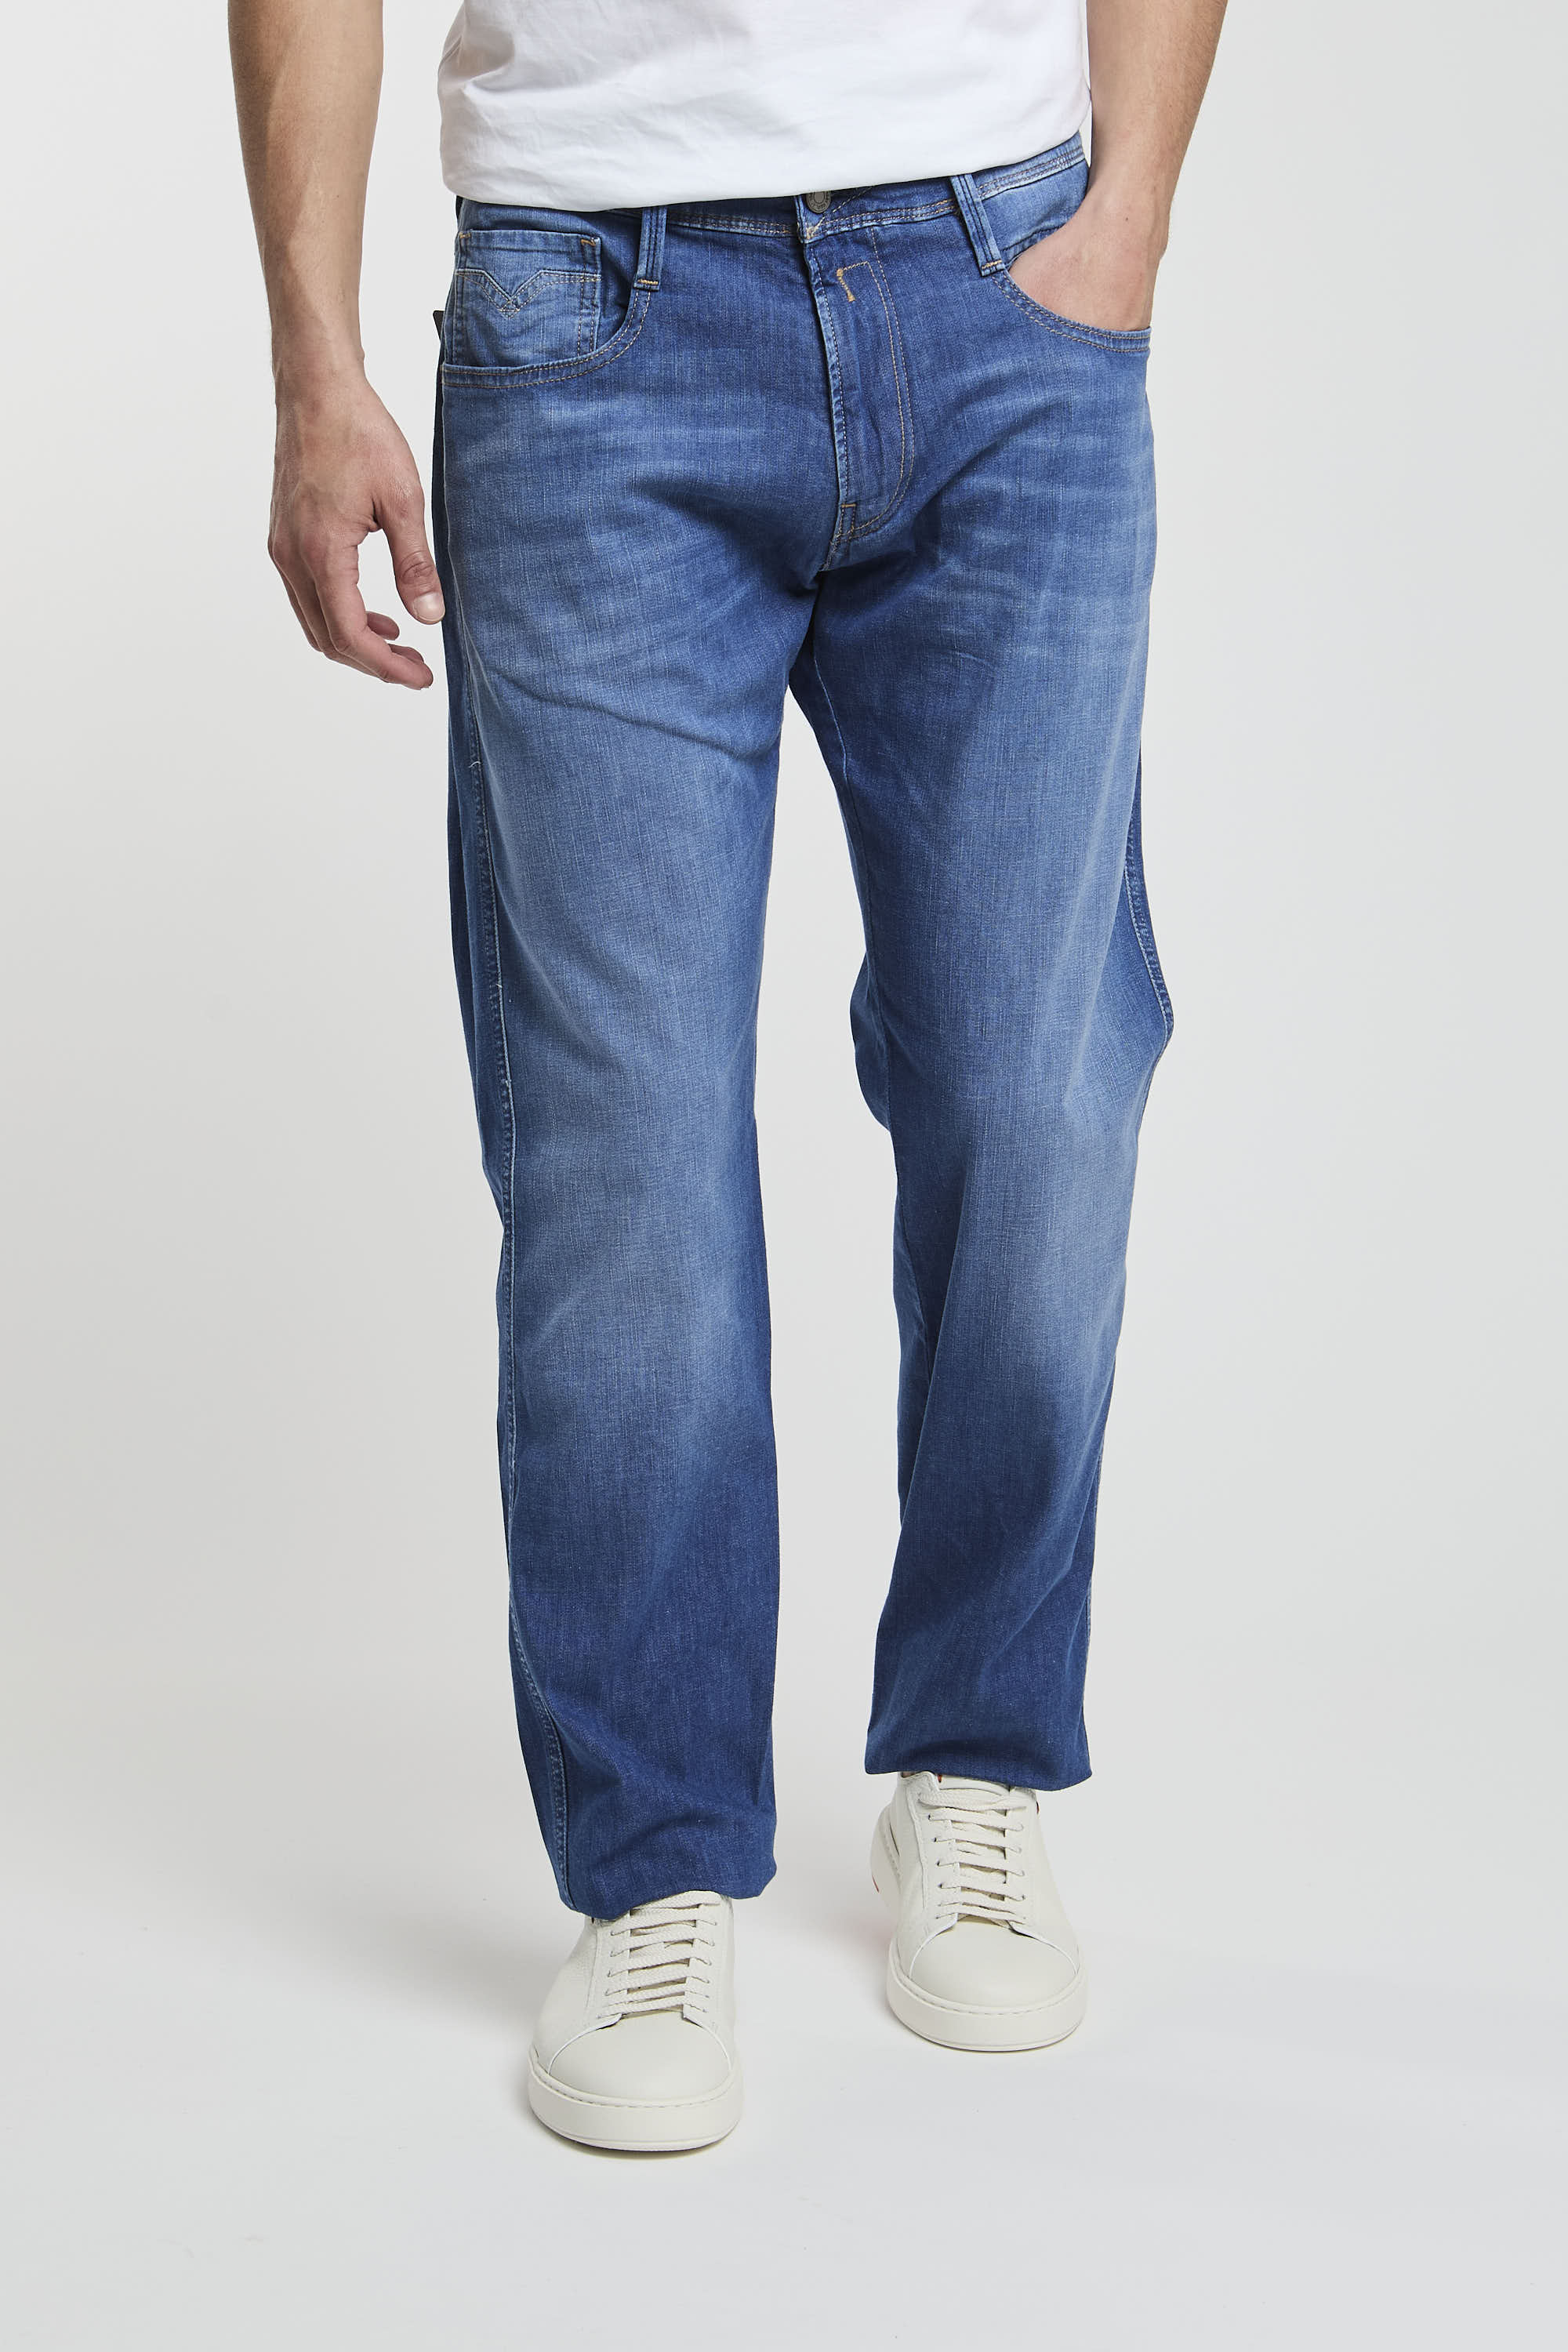 Replay Jeans Slim Fit aus Denim in Baumwolle/Lyocell/Elastomultiester/Elasthan-1